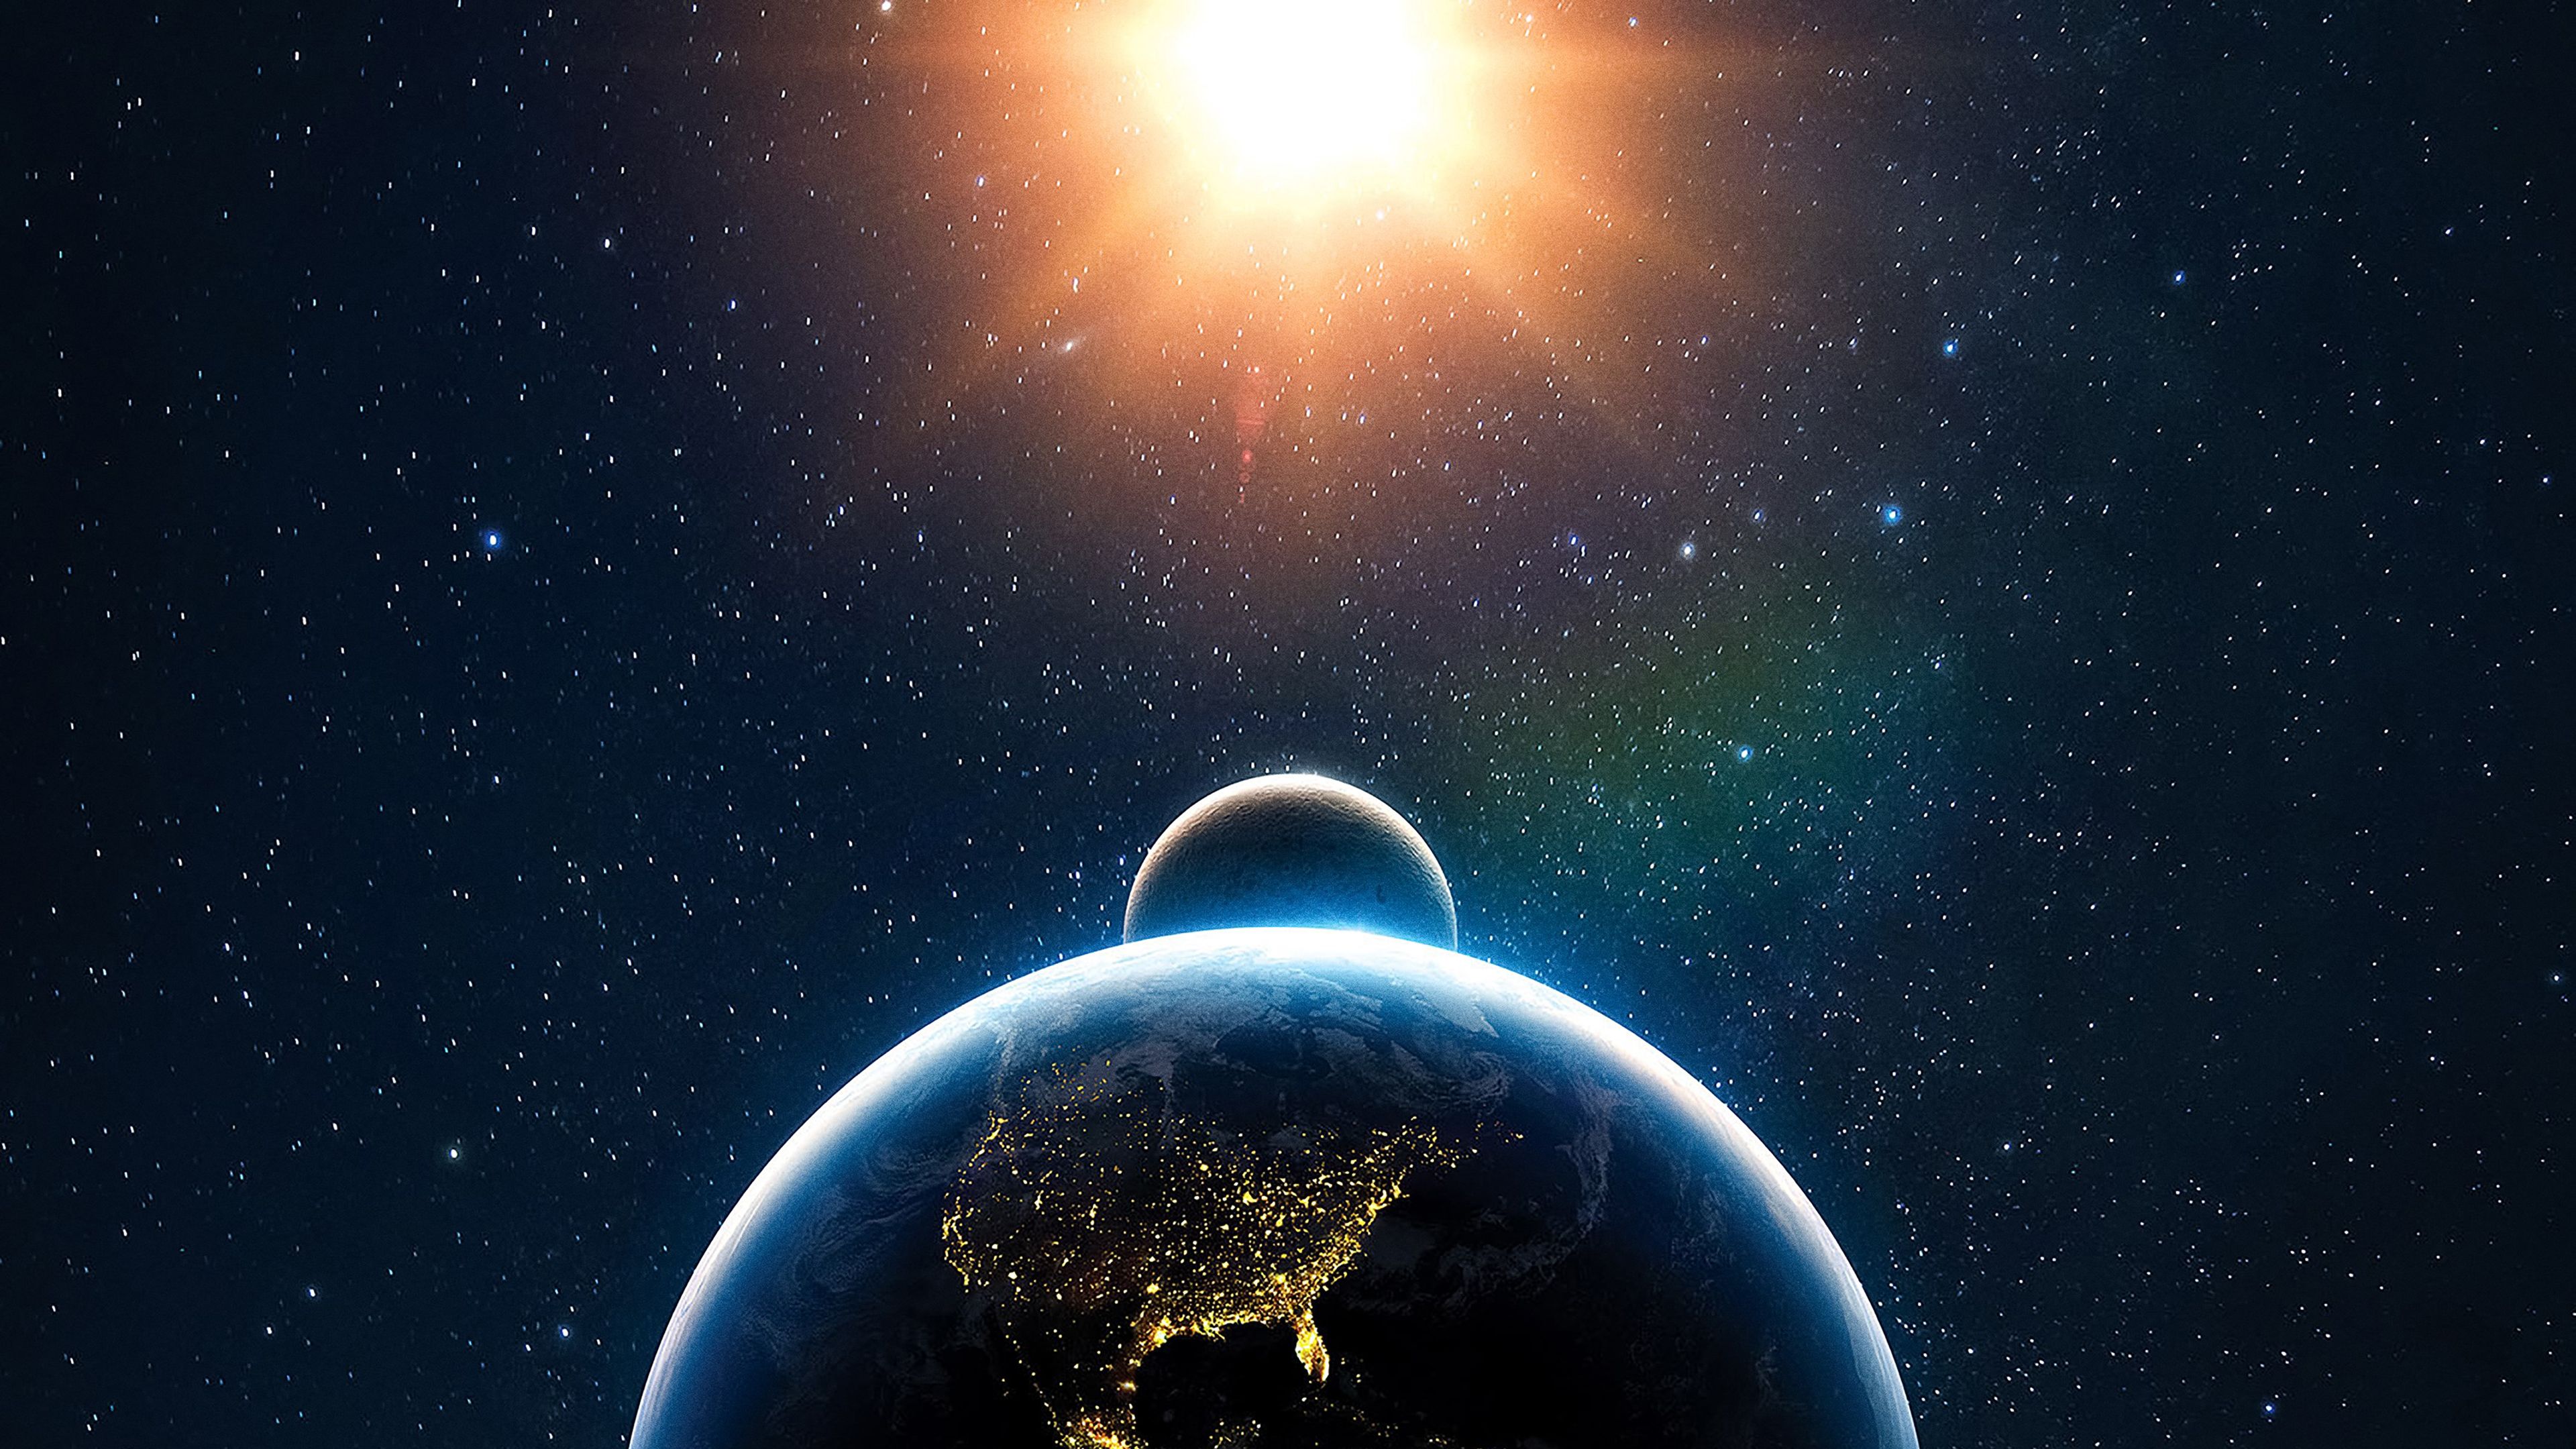 Earth, Moon, Sun, Solar system, 4k Free deskk wallpaper, Ultra HD